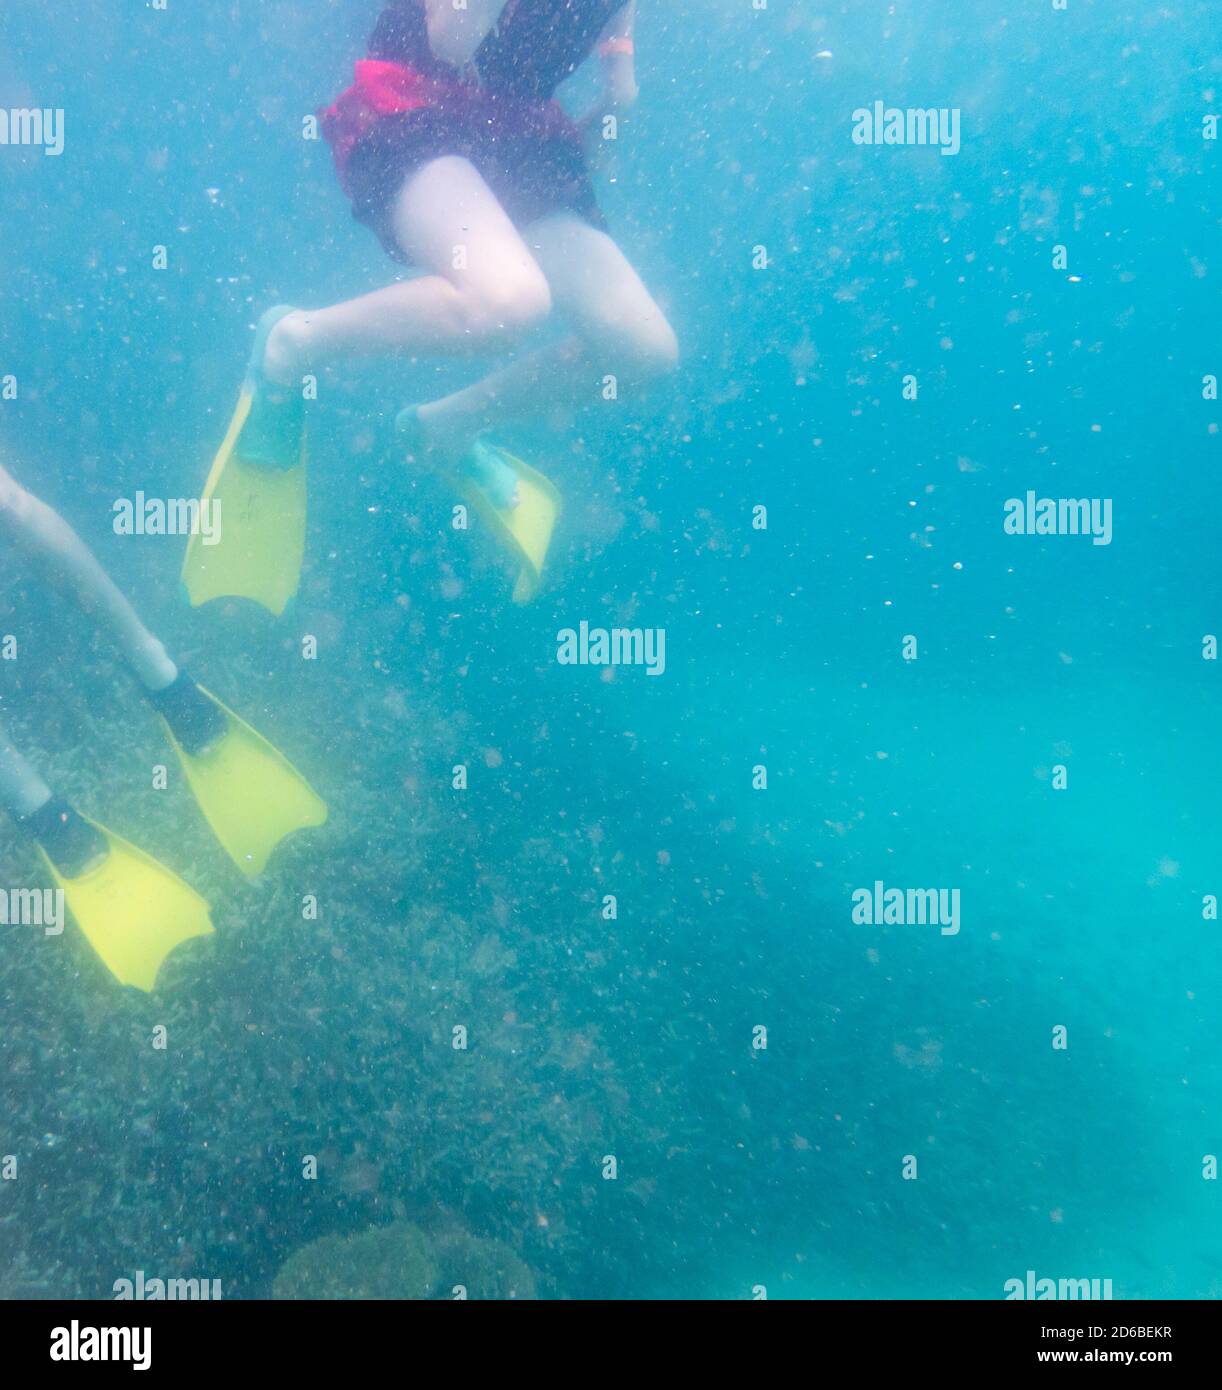 Great Keppel Island, Queensland, Australien - Dez 2019: Schnorchler an einem flachen Korallenriff im trüben Wasser, das durch Wind und Regen bewölkt ist. Unschärfe des imag Stockfoto